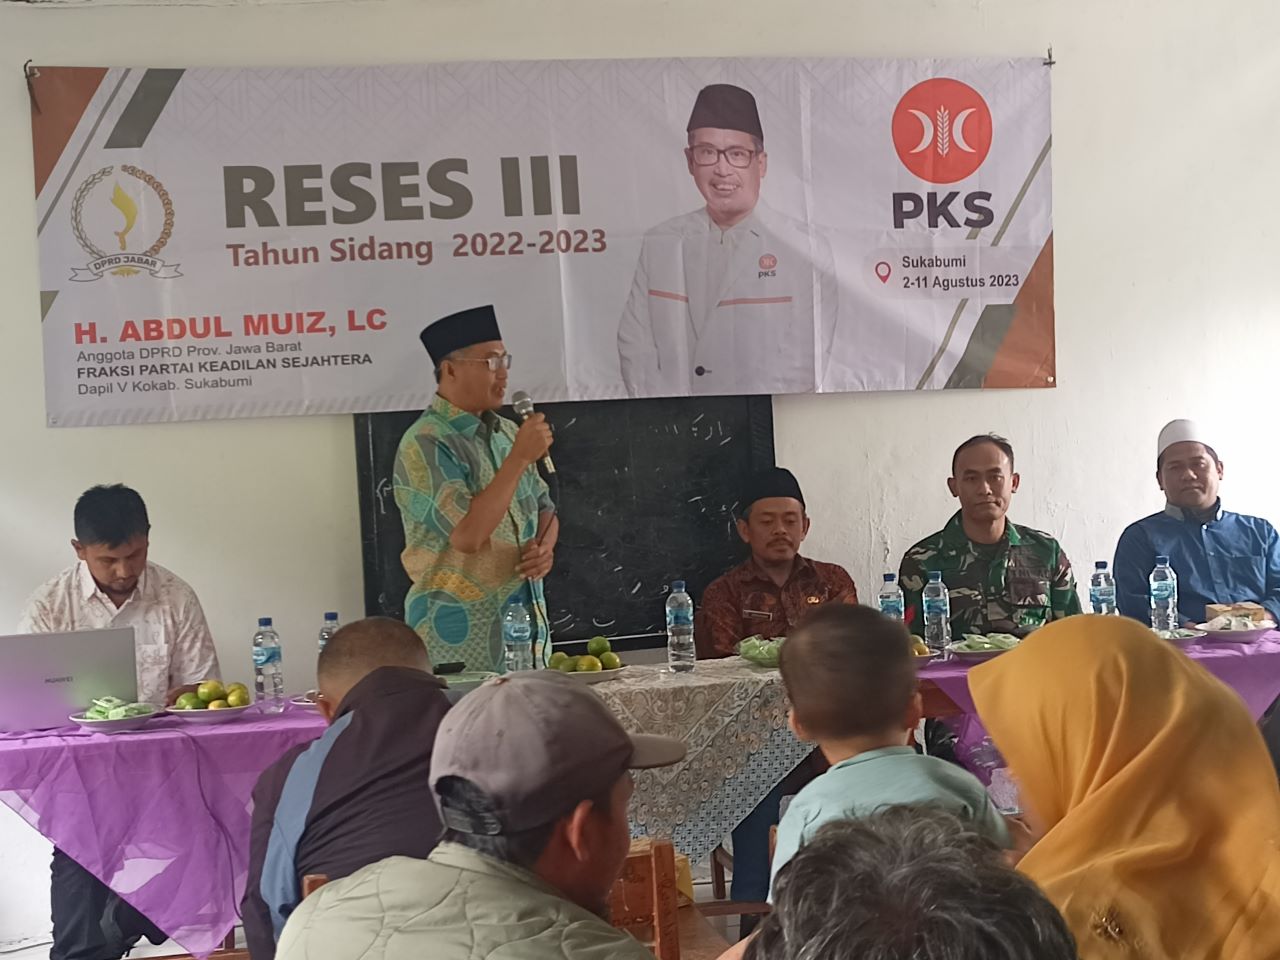 Anggota DPRD Jawa Barat Fraksi PKS Abdul Muiz Kembali melakukan kegiatan reses ke III Tahun Sidang 2022 – 2023.